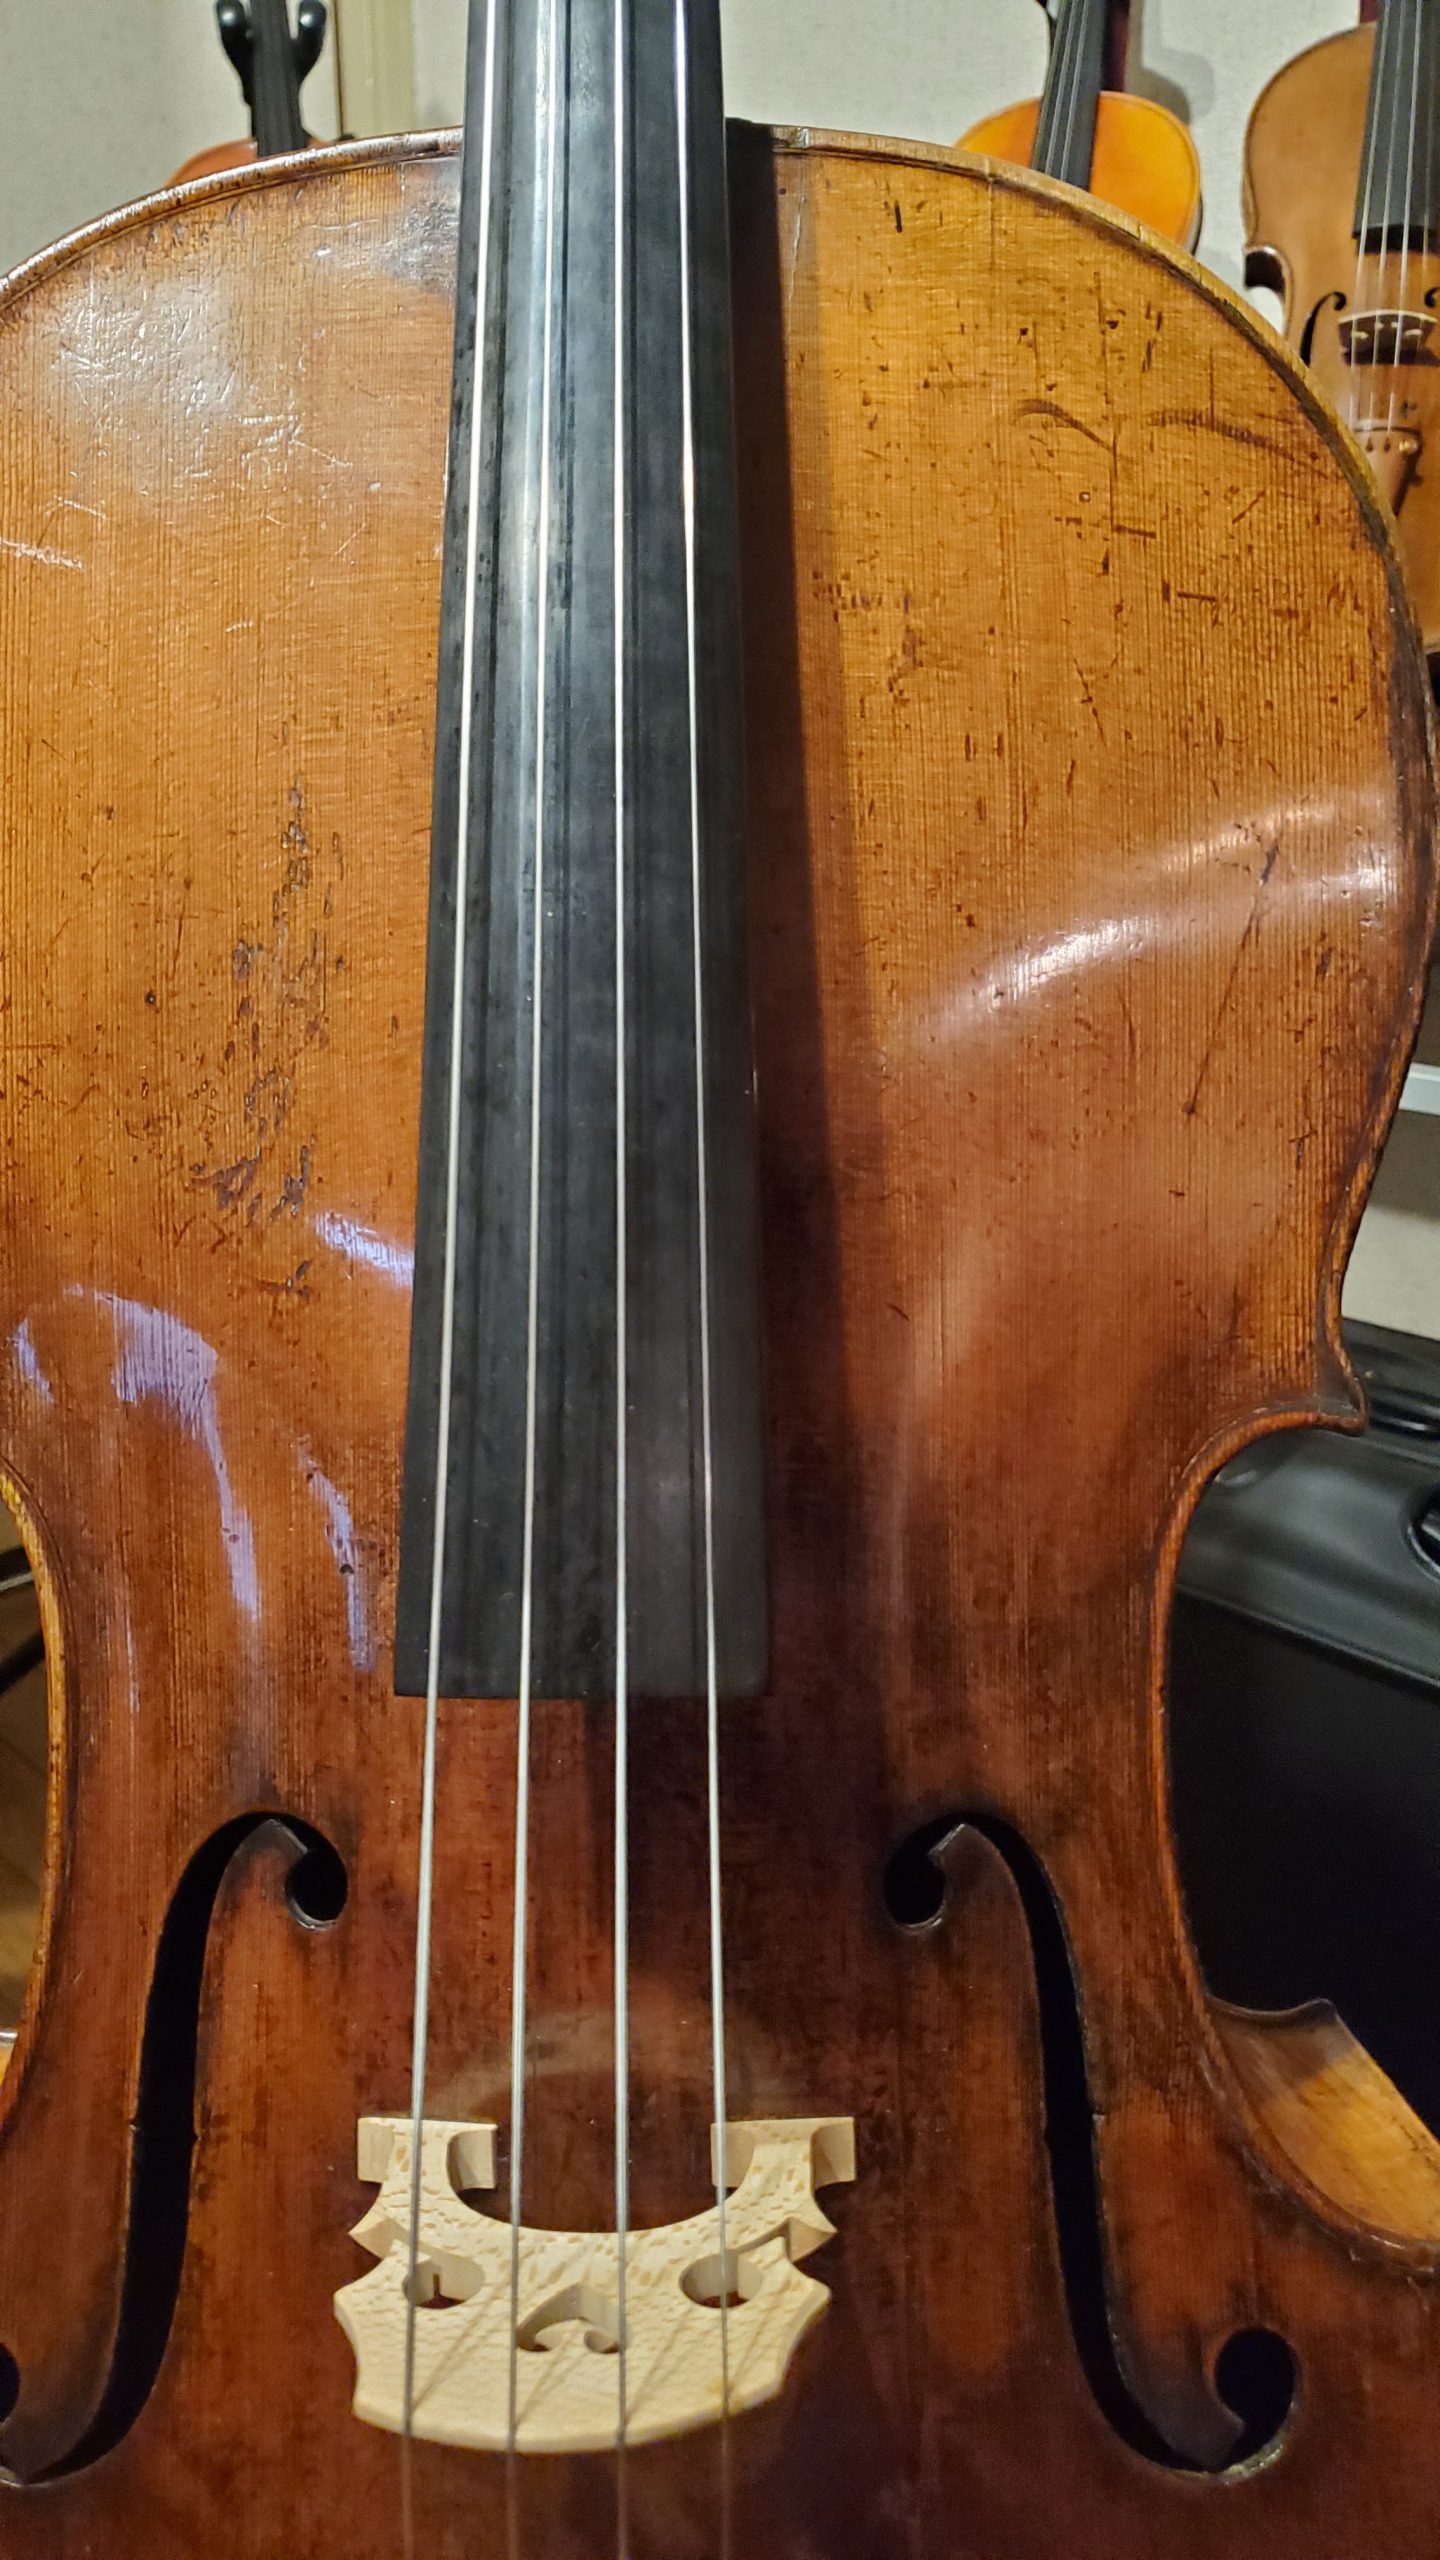 ちょっと小ぶりな古いドイツ製チェロ – 古賀弦楽器